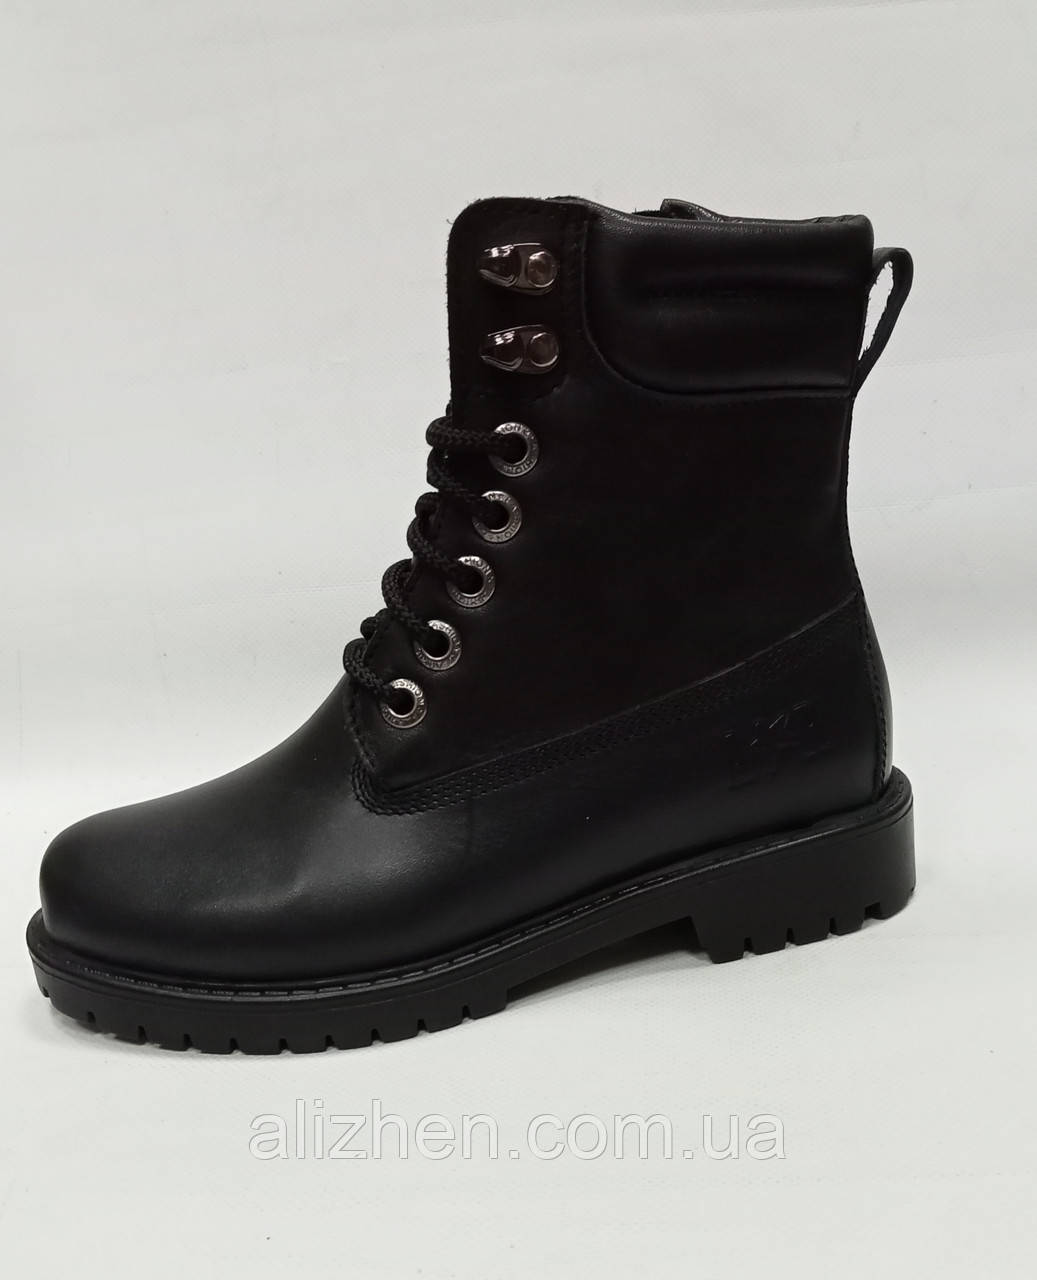 Зимові підліткові дитячі  черевики для хлопчика з натуральної шкіри, розмір 32 - 41, чорні